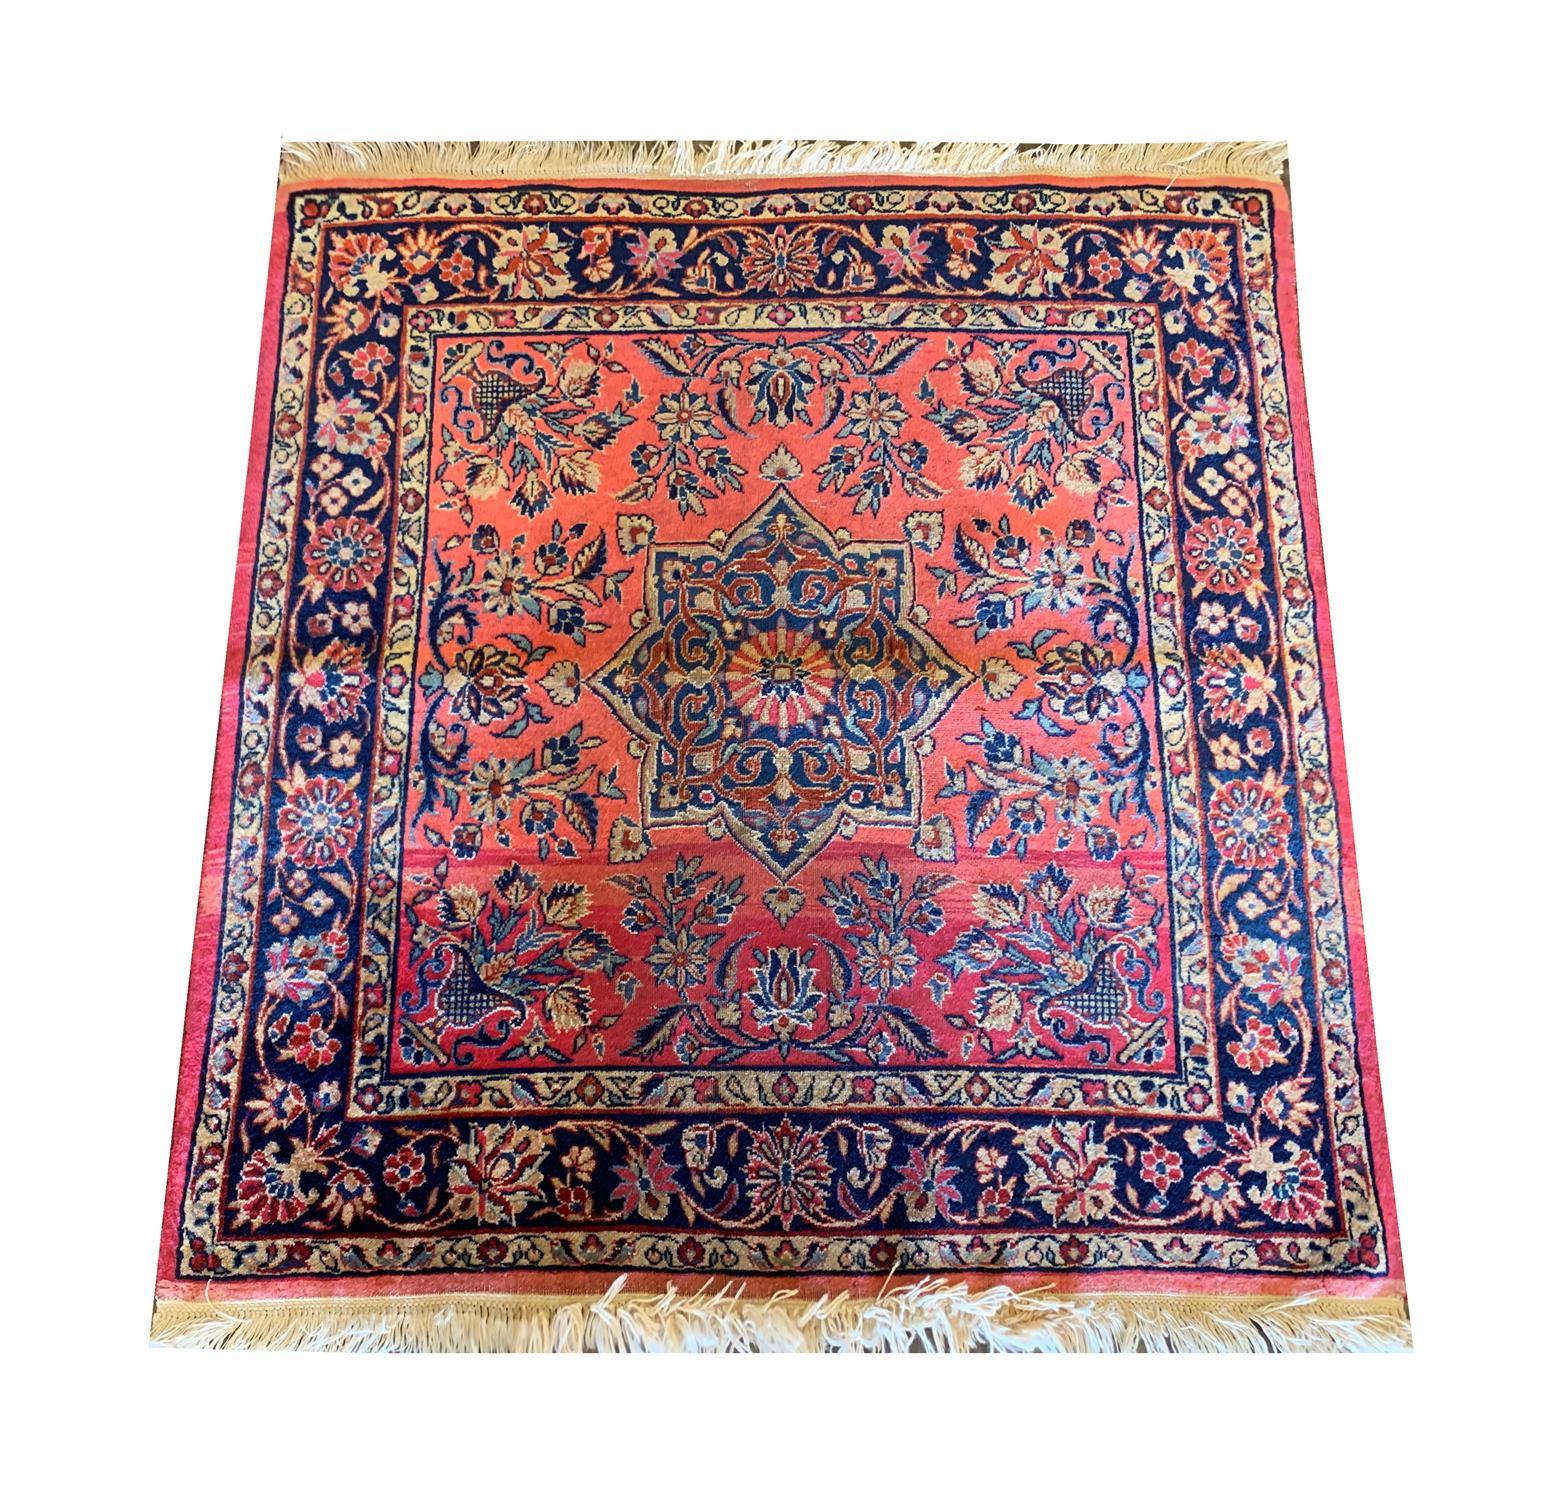 Dieser Teppich aus feiner Wolle wurde in den 1880er Jahren in der Türkei handgeknüpft, wobei die Materialien aus der Region stammen. Das zentrale Muster wurde auf einem rostfarbenen Hintergrund mit einem großen Medaillon gewebt; Blumen und Blätter